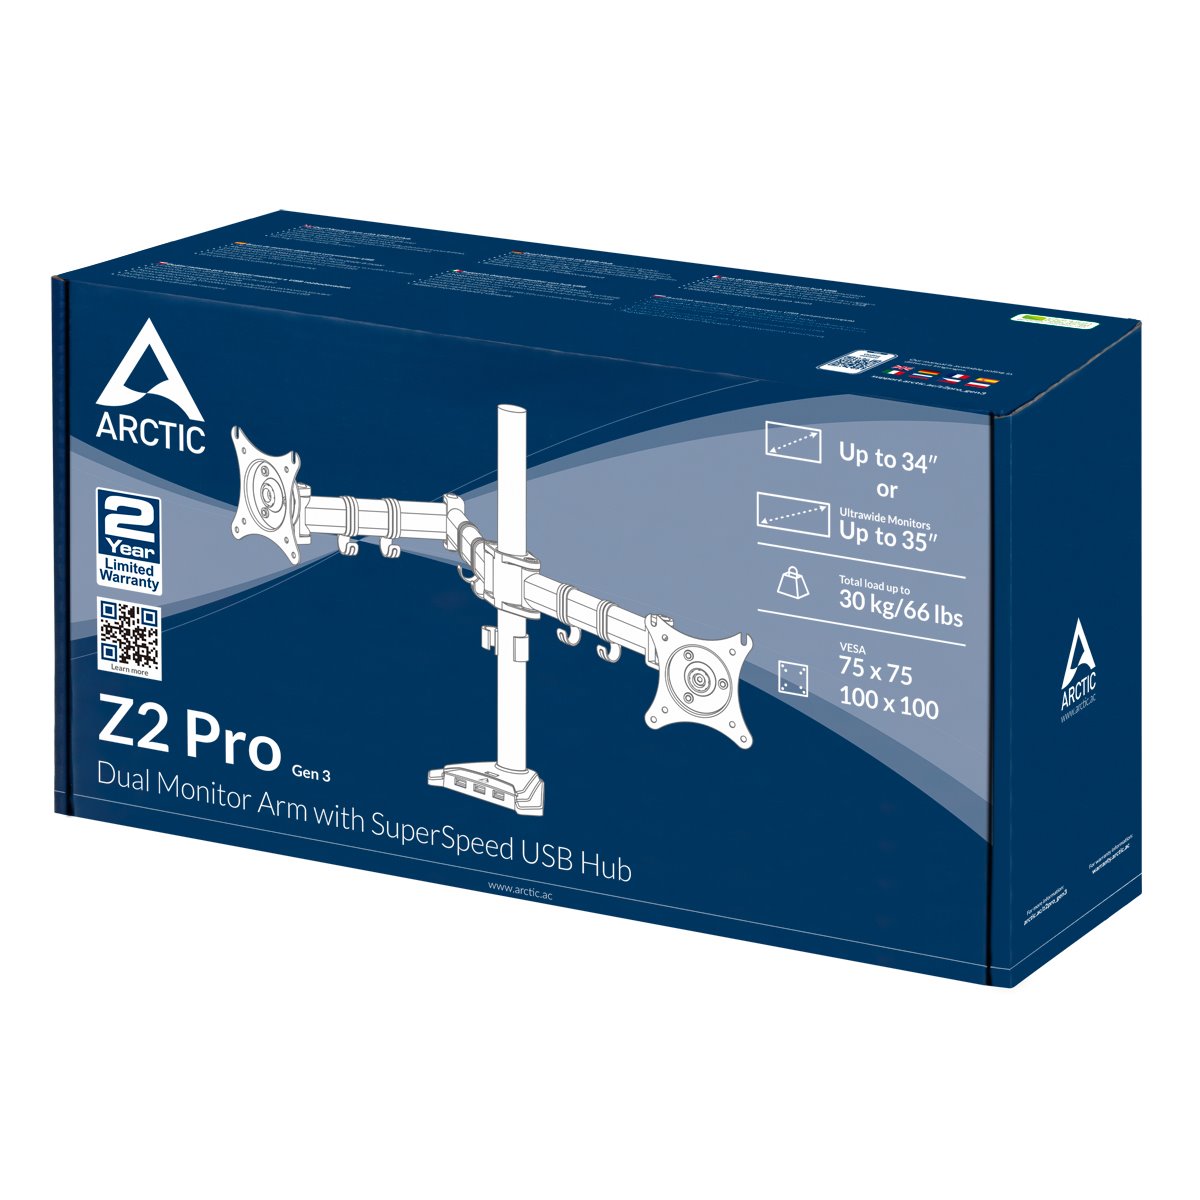 ARCTIC Z2 Pro (Gen 3)